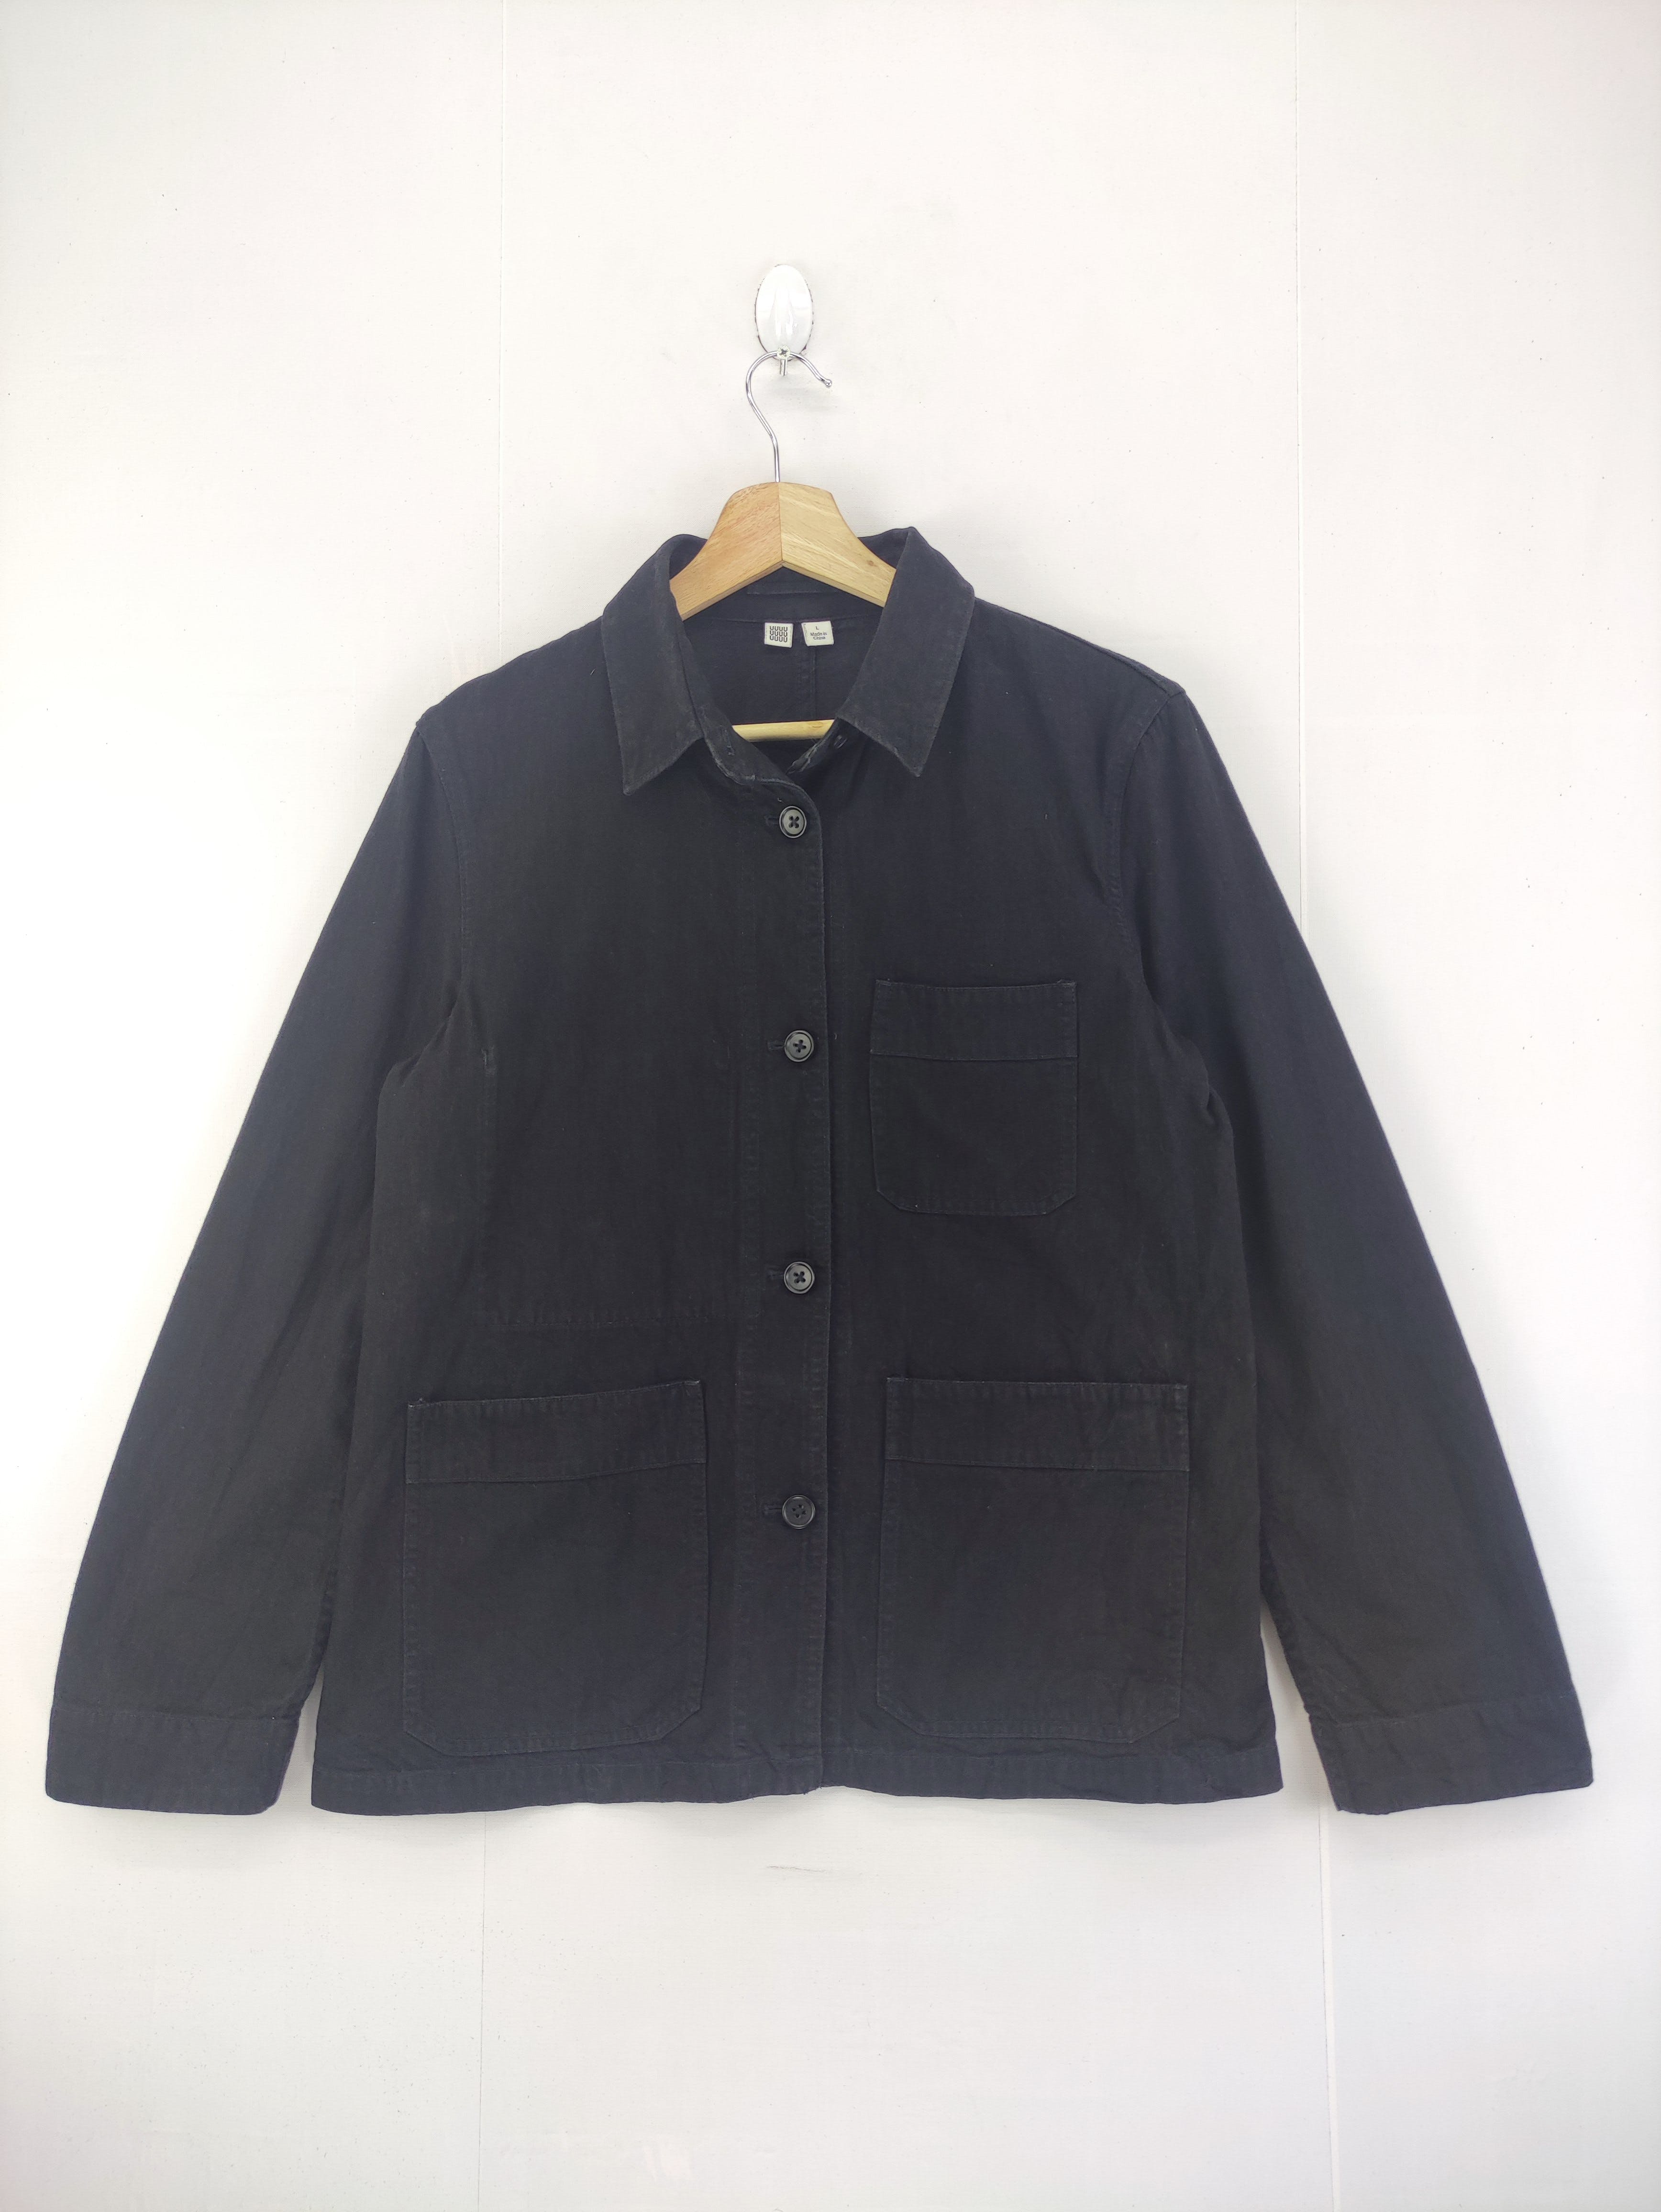 Vintage Lemaire x Uniqlo Chore Jacket Button Up - 1